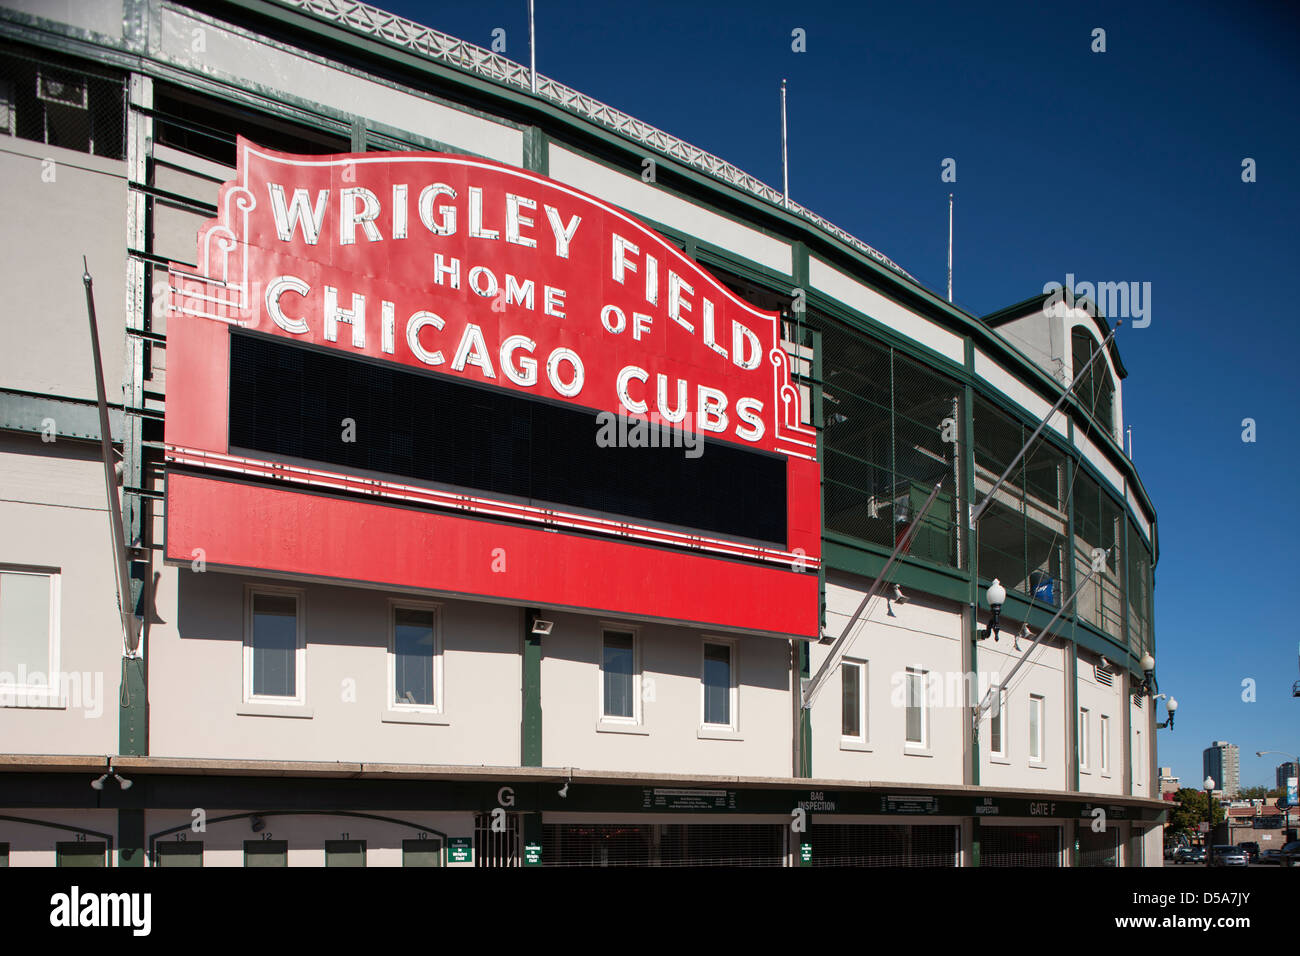 CHICAGO CUBS ENTRADA PRINCIPAL MARQUESINA Wrigley Field, el estadio de béisbol (©Zachary Taylor Davis 1914) de Chicago, Illinois, EE.UU. Foto de stock